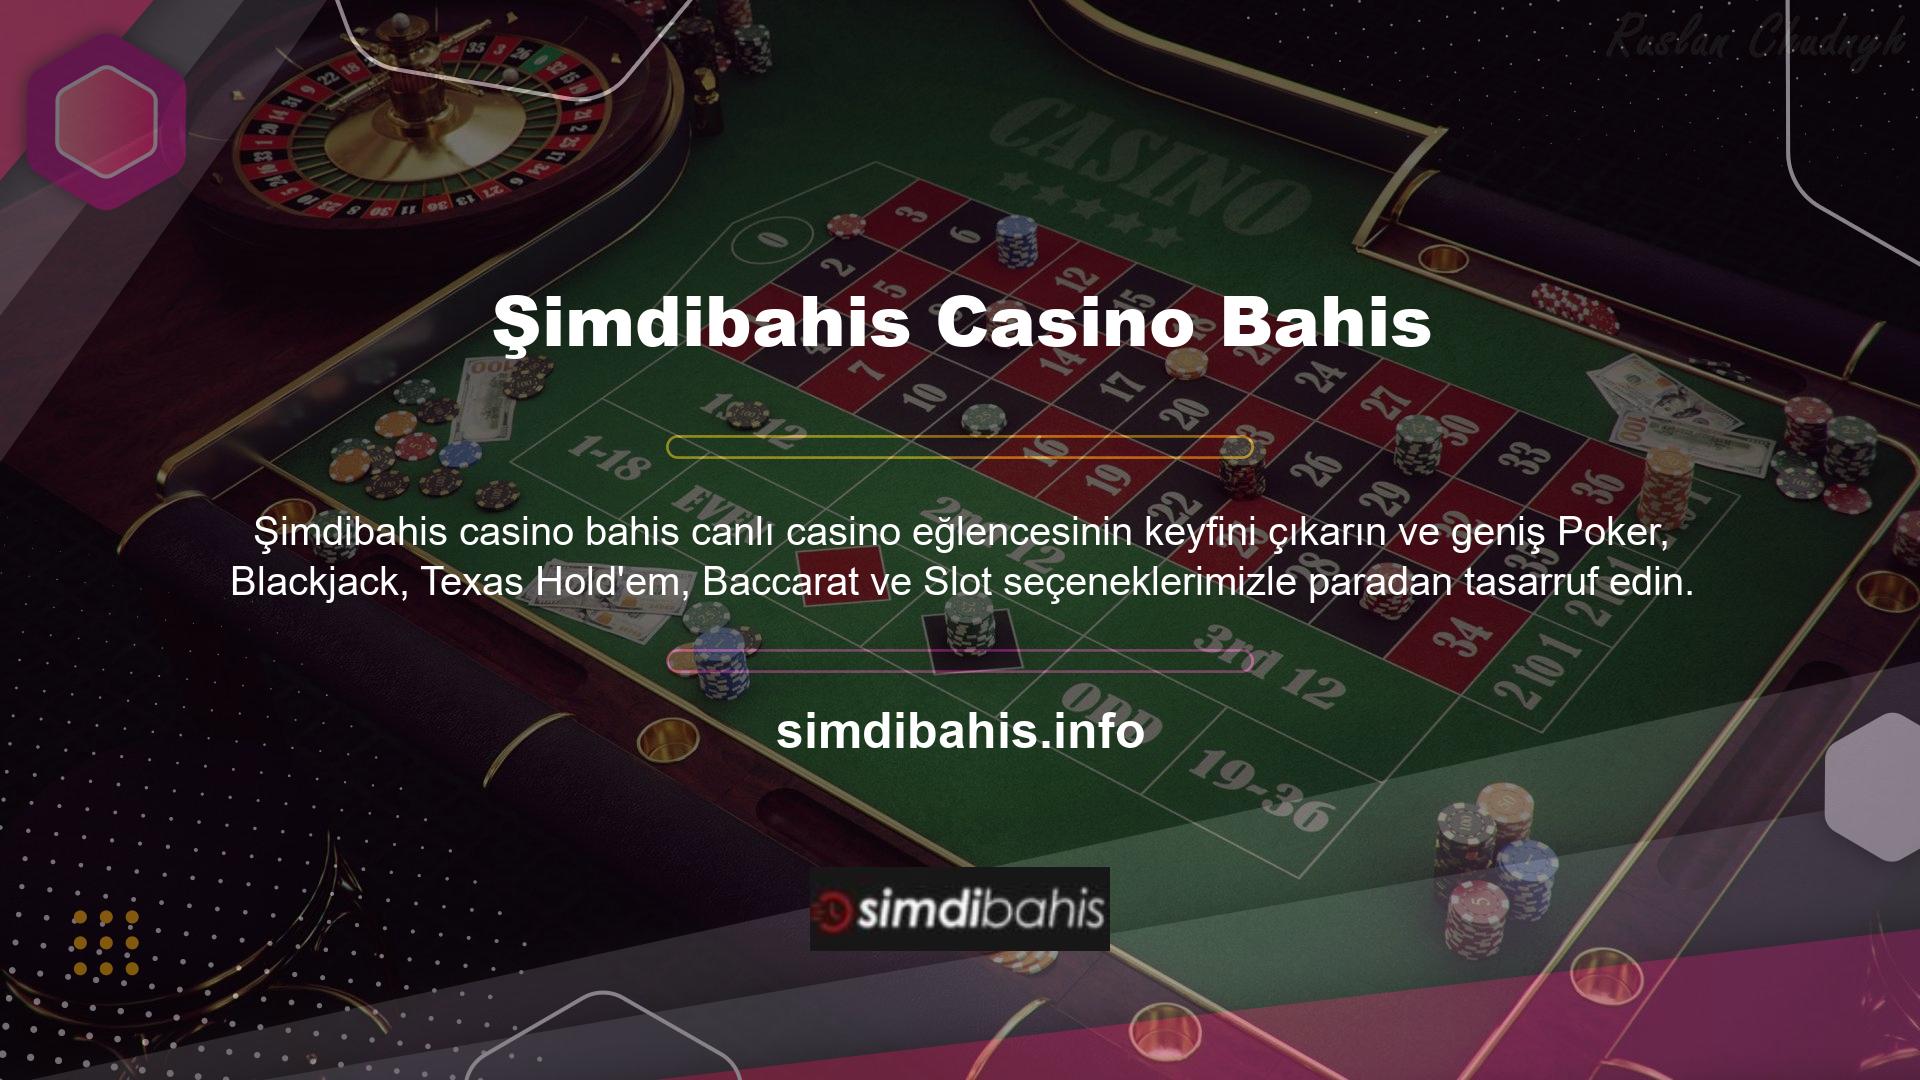 Şimdibahis casino bahis web sitesine erişim için yukarıdaki seçeneklerin çoğu, dilerseniz spor oyunlarında ve casinolarda kazanmanıza olanak sağlayacaktır